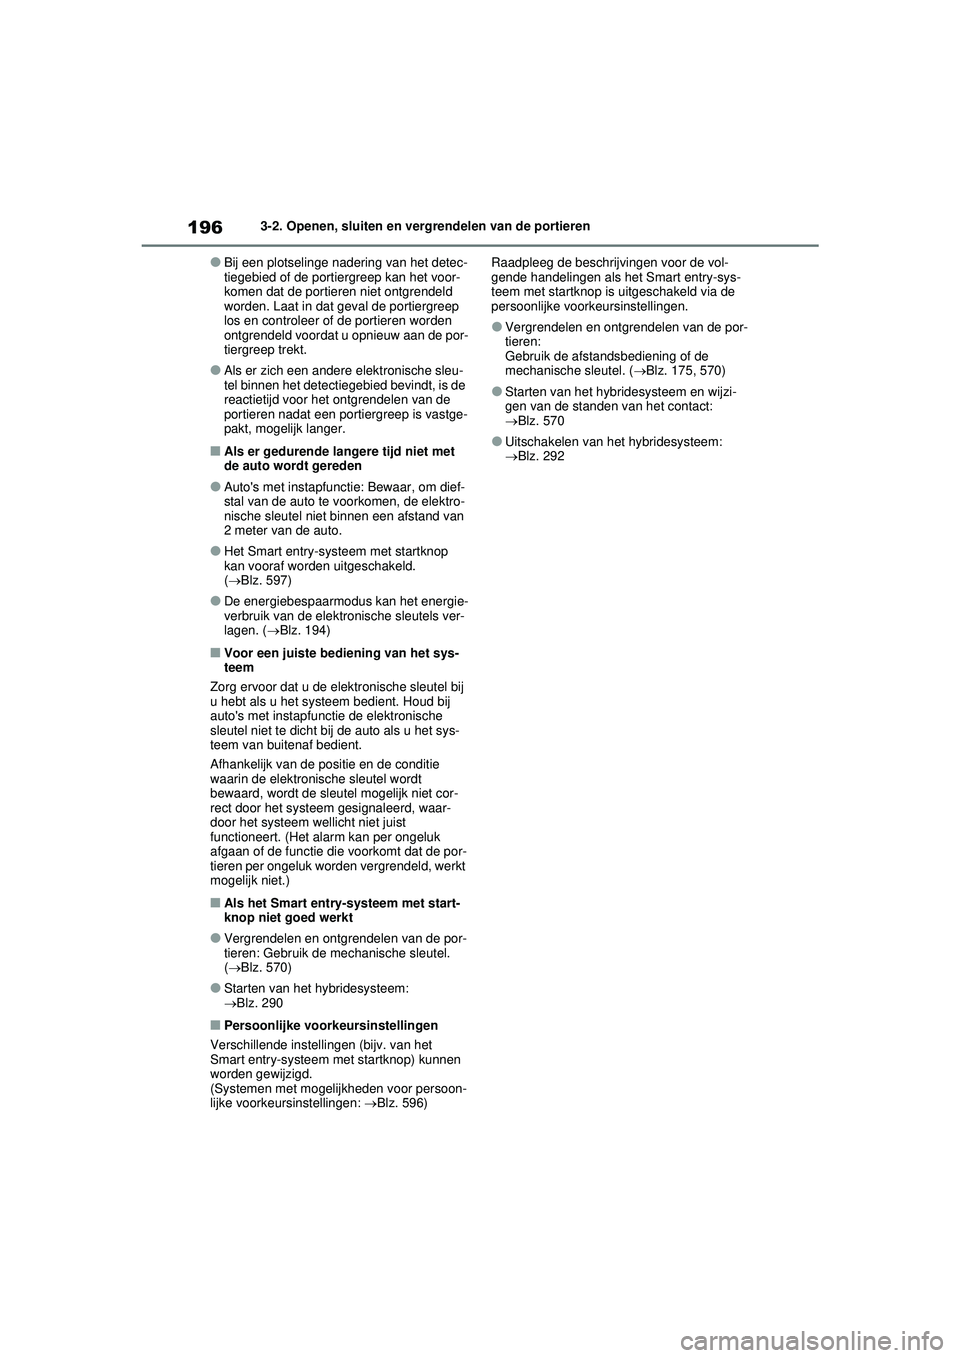 TOYOTA RAV4 HYBRID 2021  Instructieboekje (in Dutch) 1963-2. Openen, sluiten en vergrendelen van de portieren
●Bij een plotselinge nadering van het detec-
tiegebied of de portiergreep kan het voor-
komen dat de portieren niet ontgrendeld 
worden. Laat